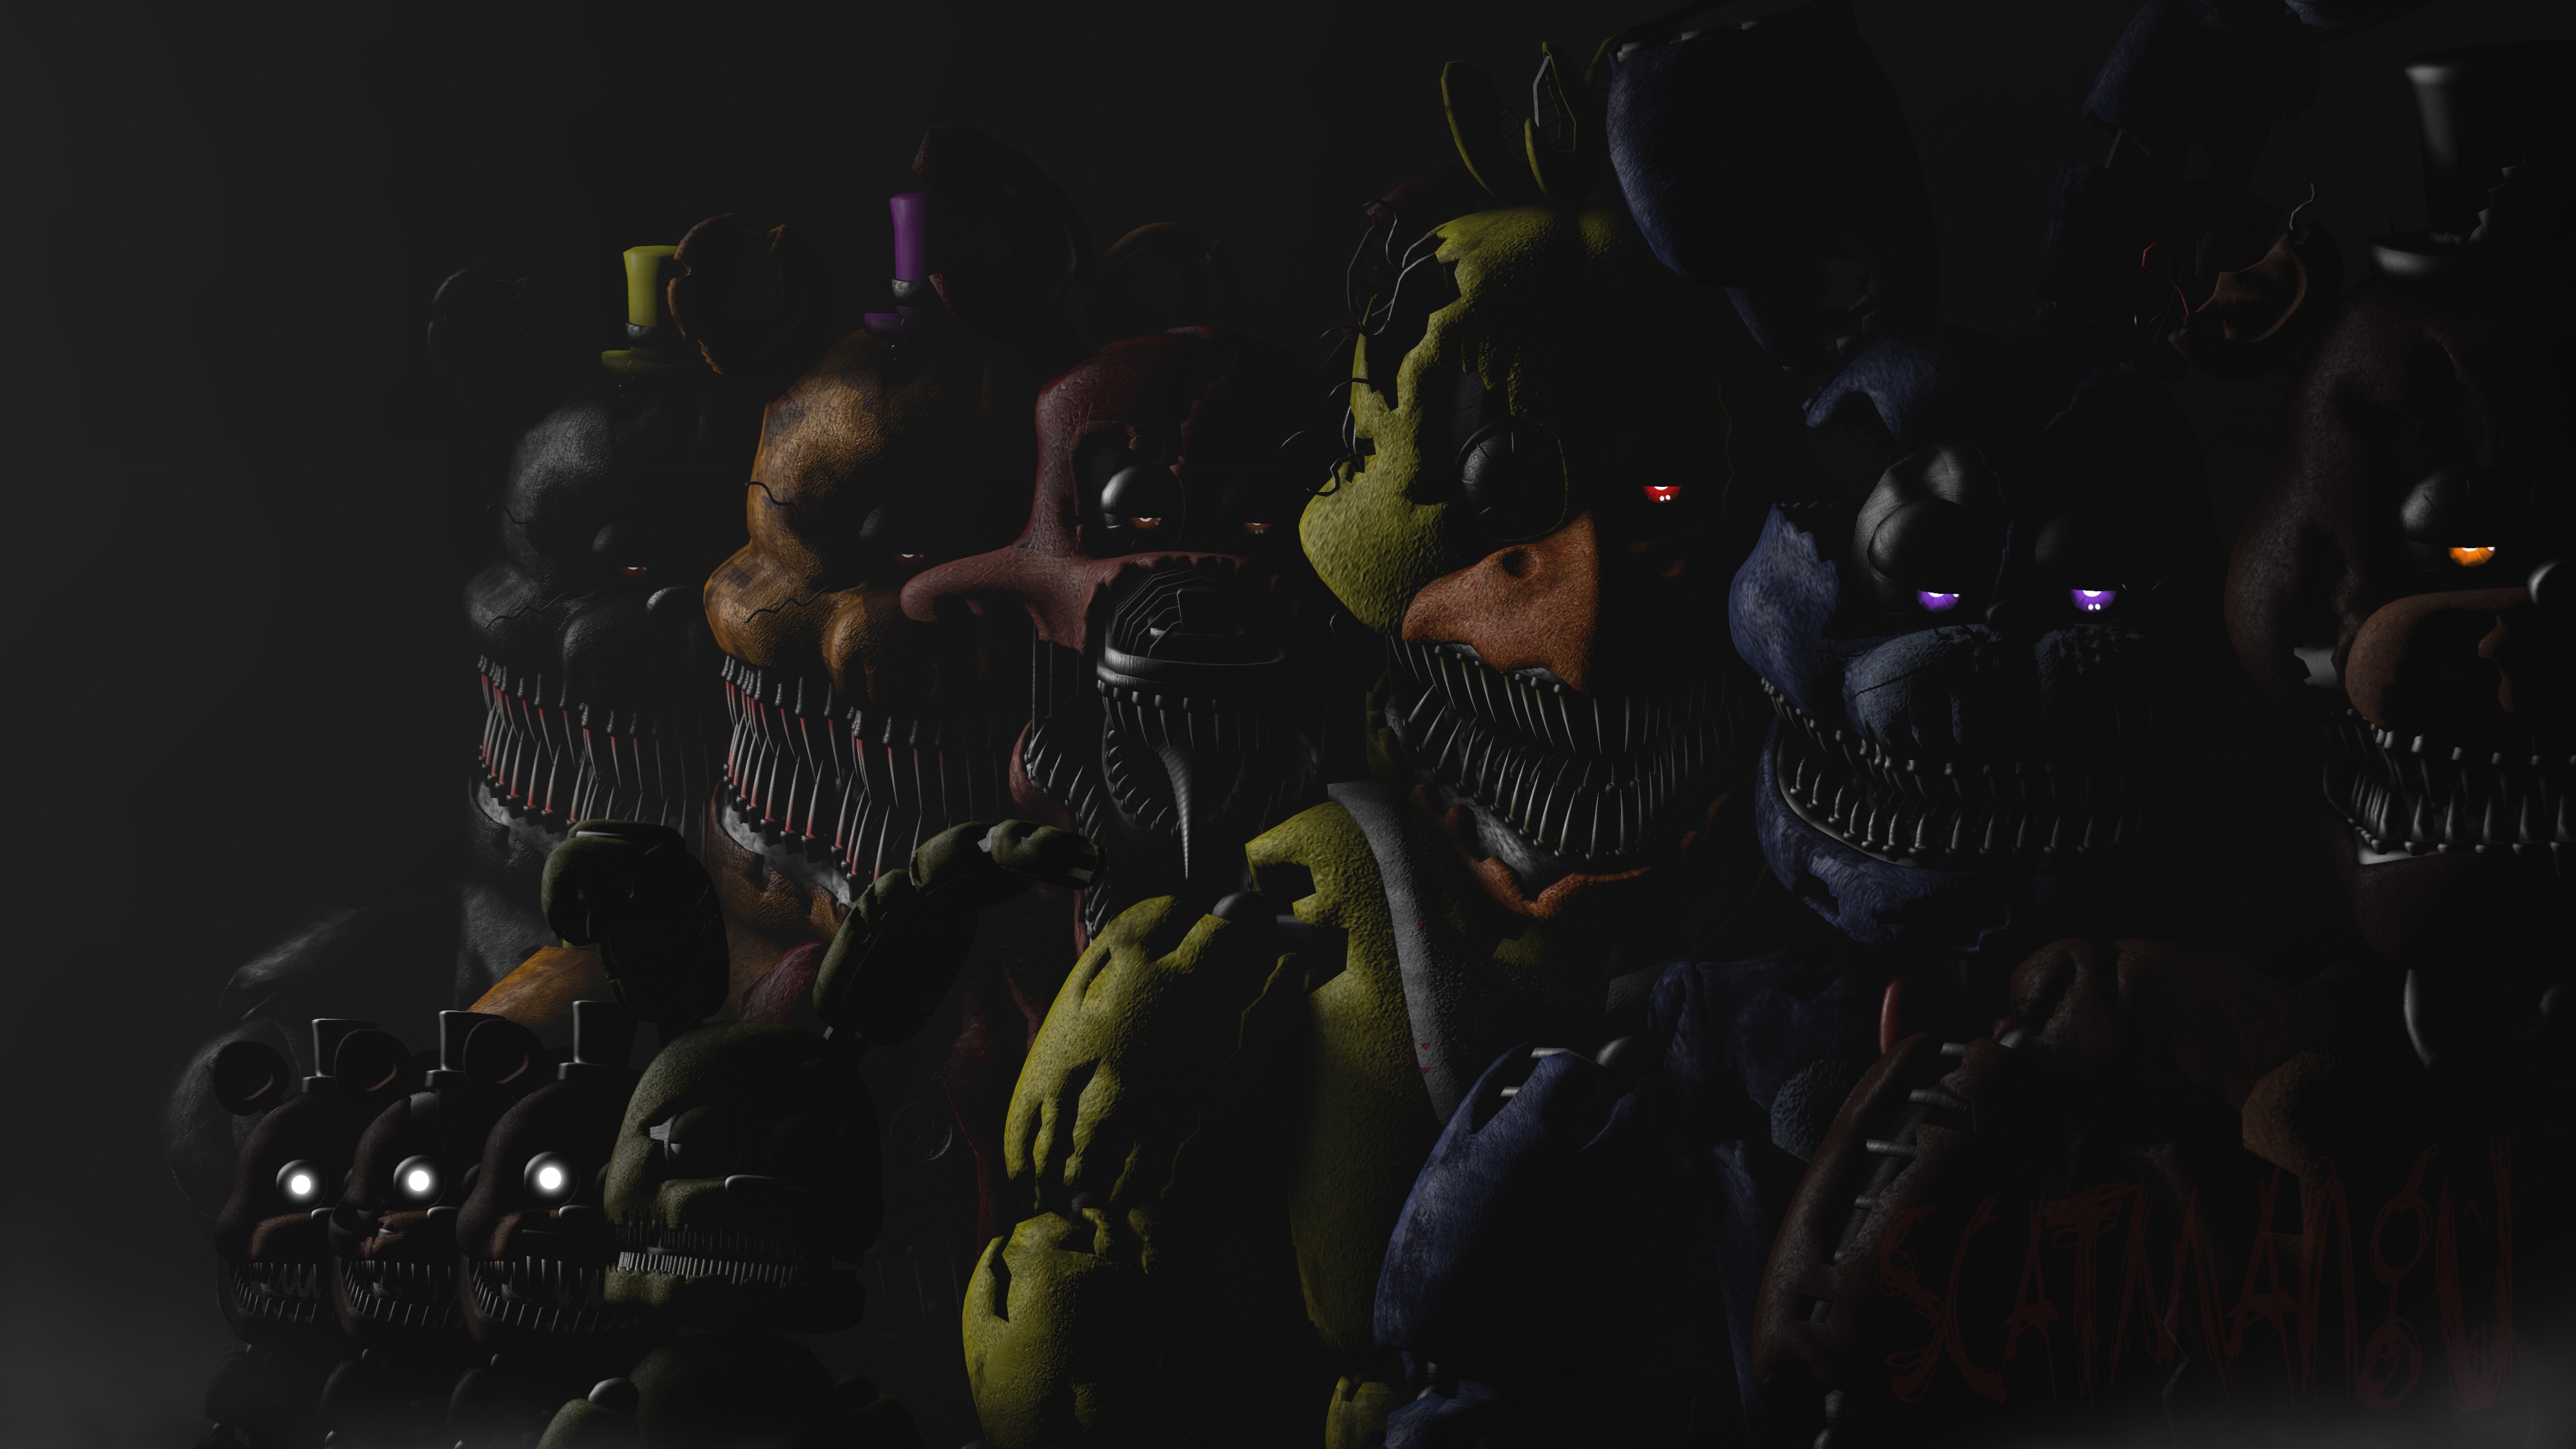 Five Nights At Freddys Video Games Dark Glowing Eyes 4000x2250